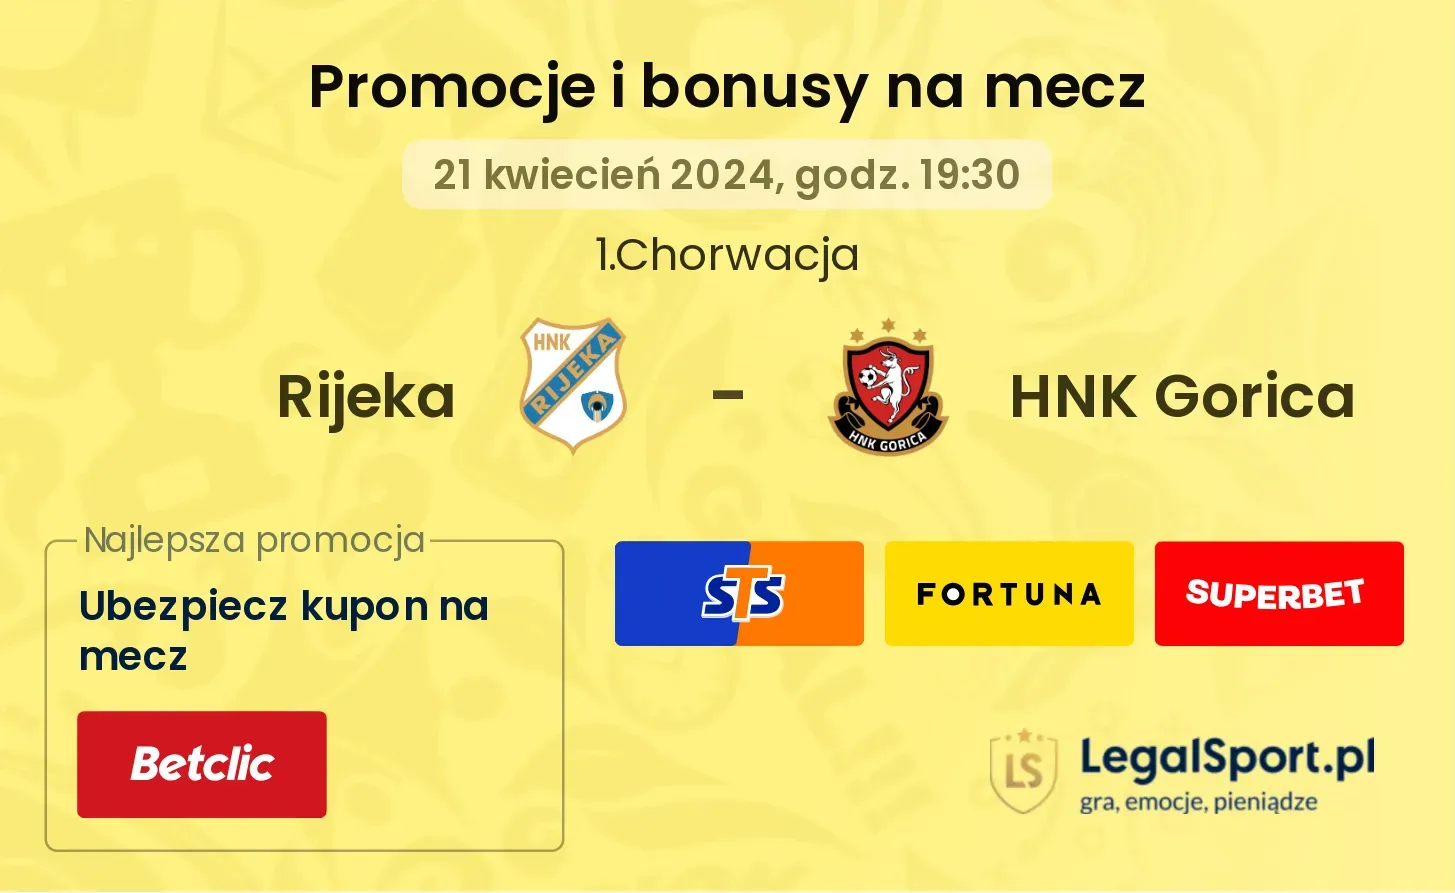 Rijeka - HNK Gorica promocje bonusy na mecz